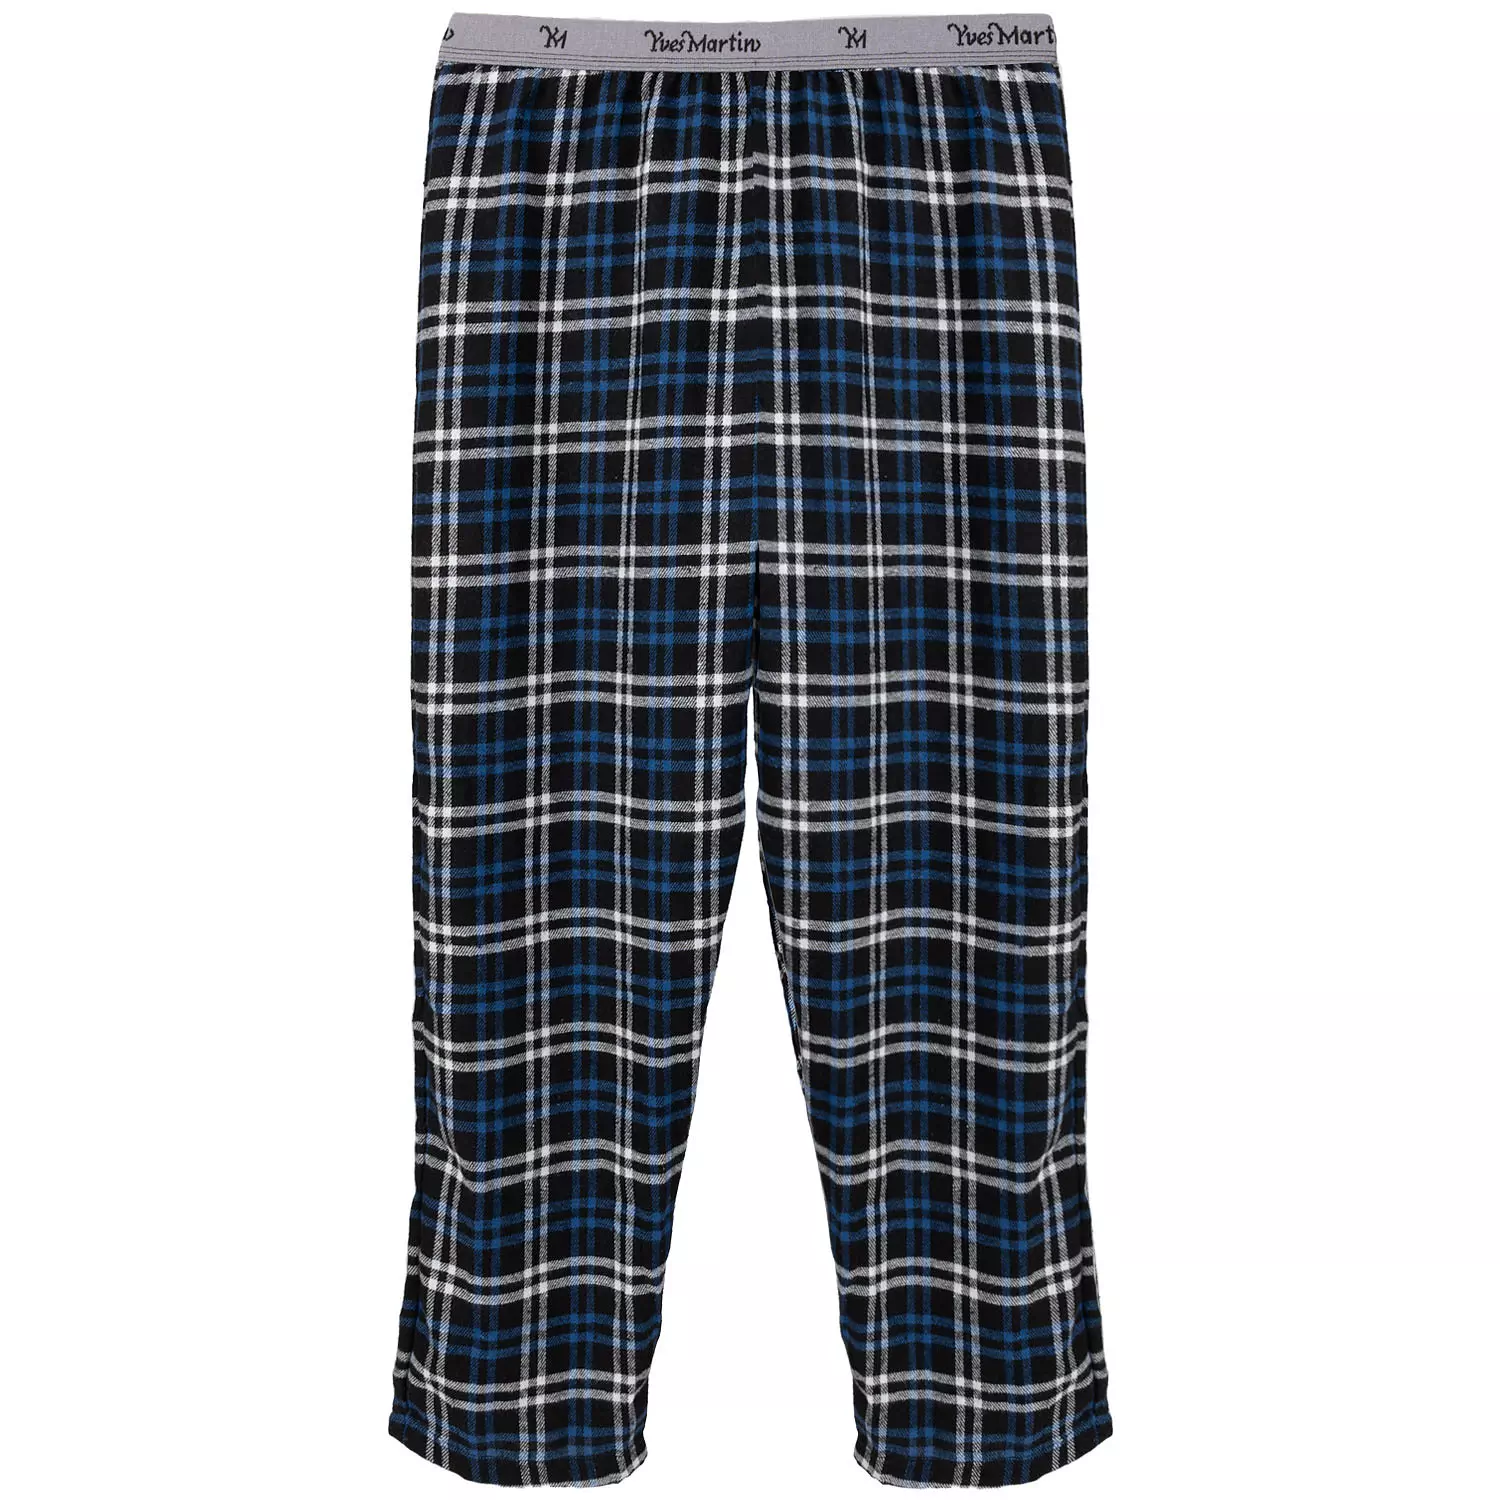 Yves Martin - Pantalon de pyjama en flanelle à carreaux bleus, très grand (TG)